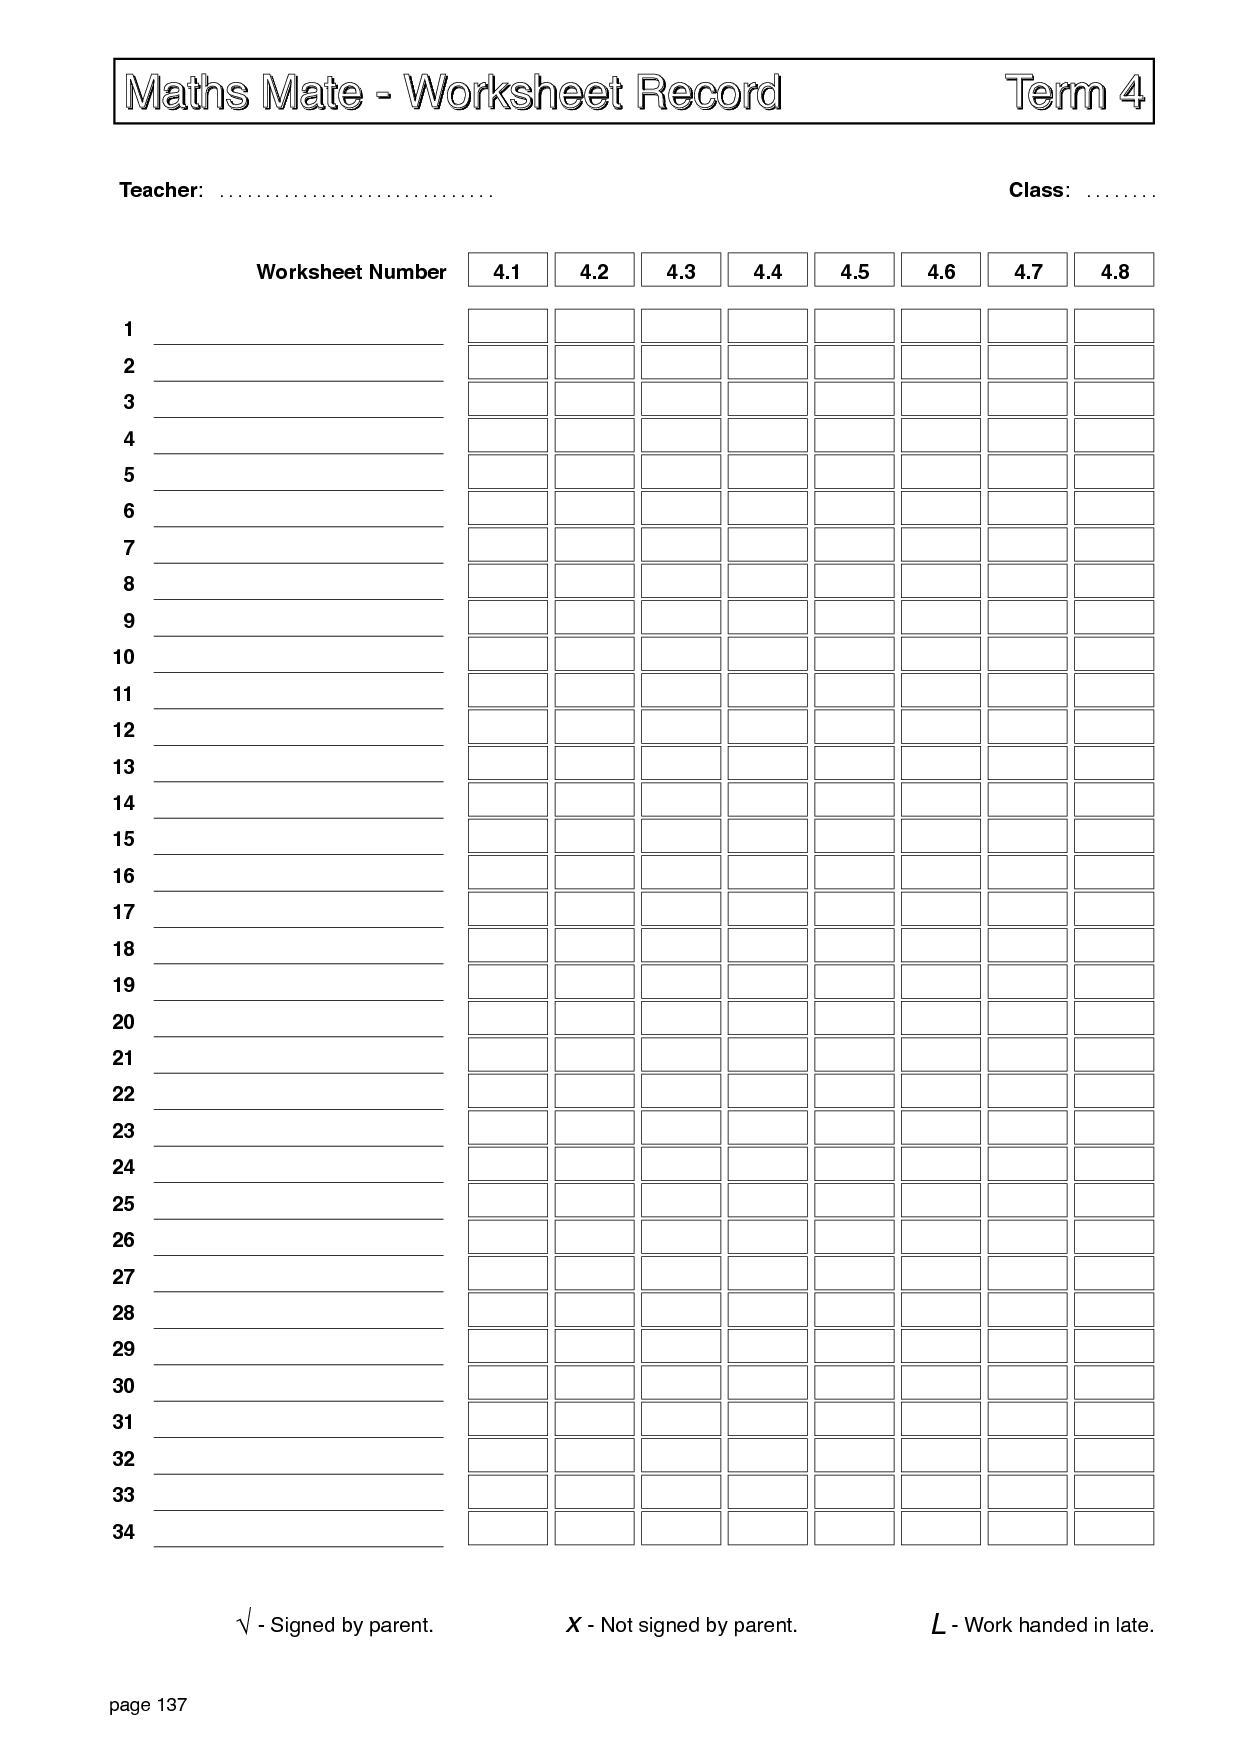 15-teaching-categories-worksheets-worksheeto